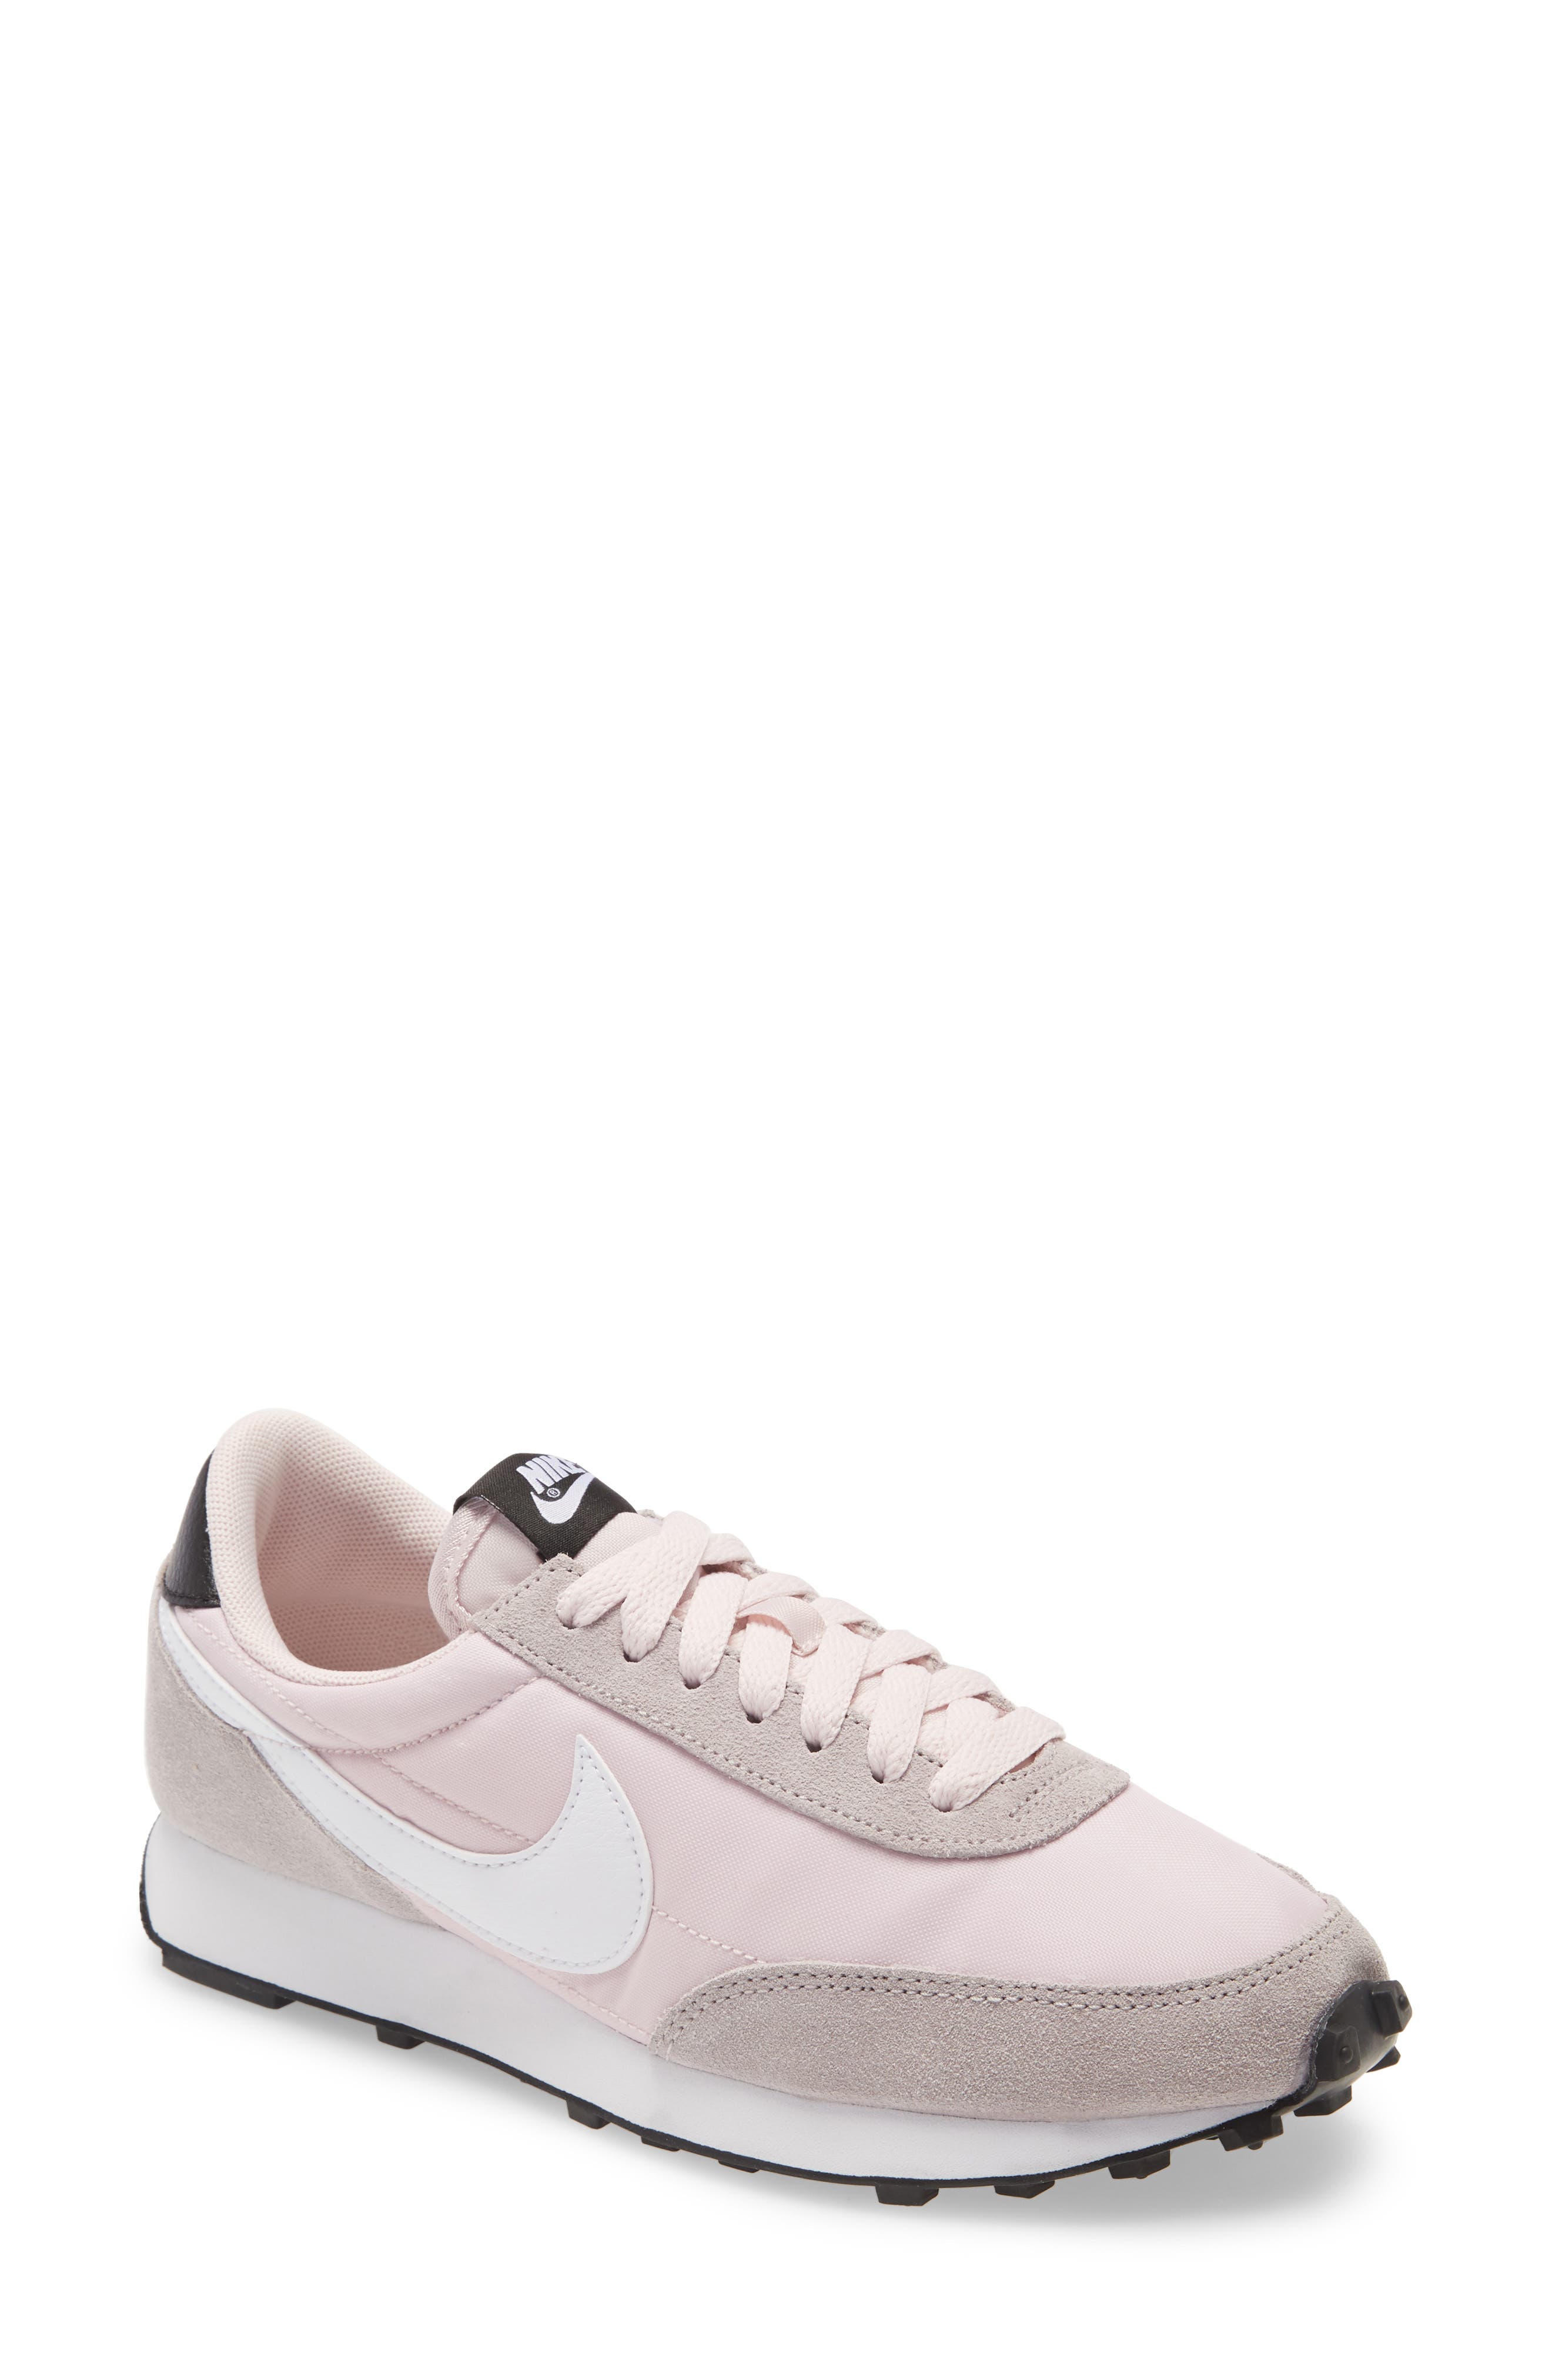 nike pale pink sneakers